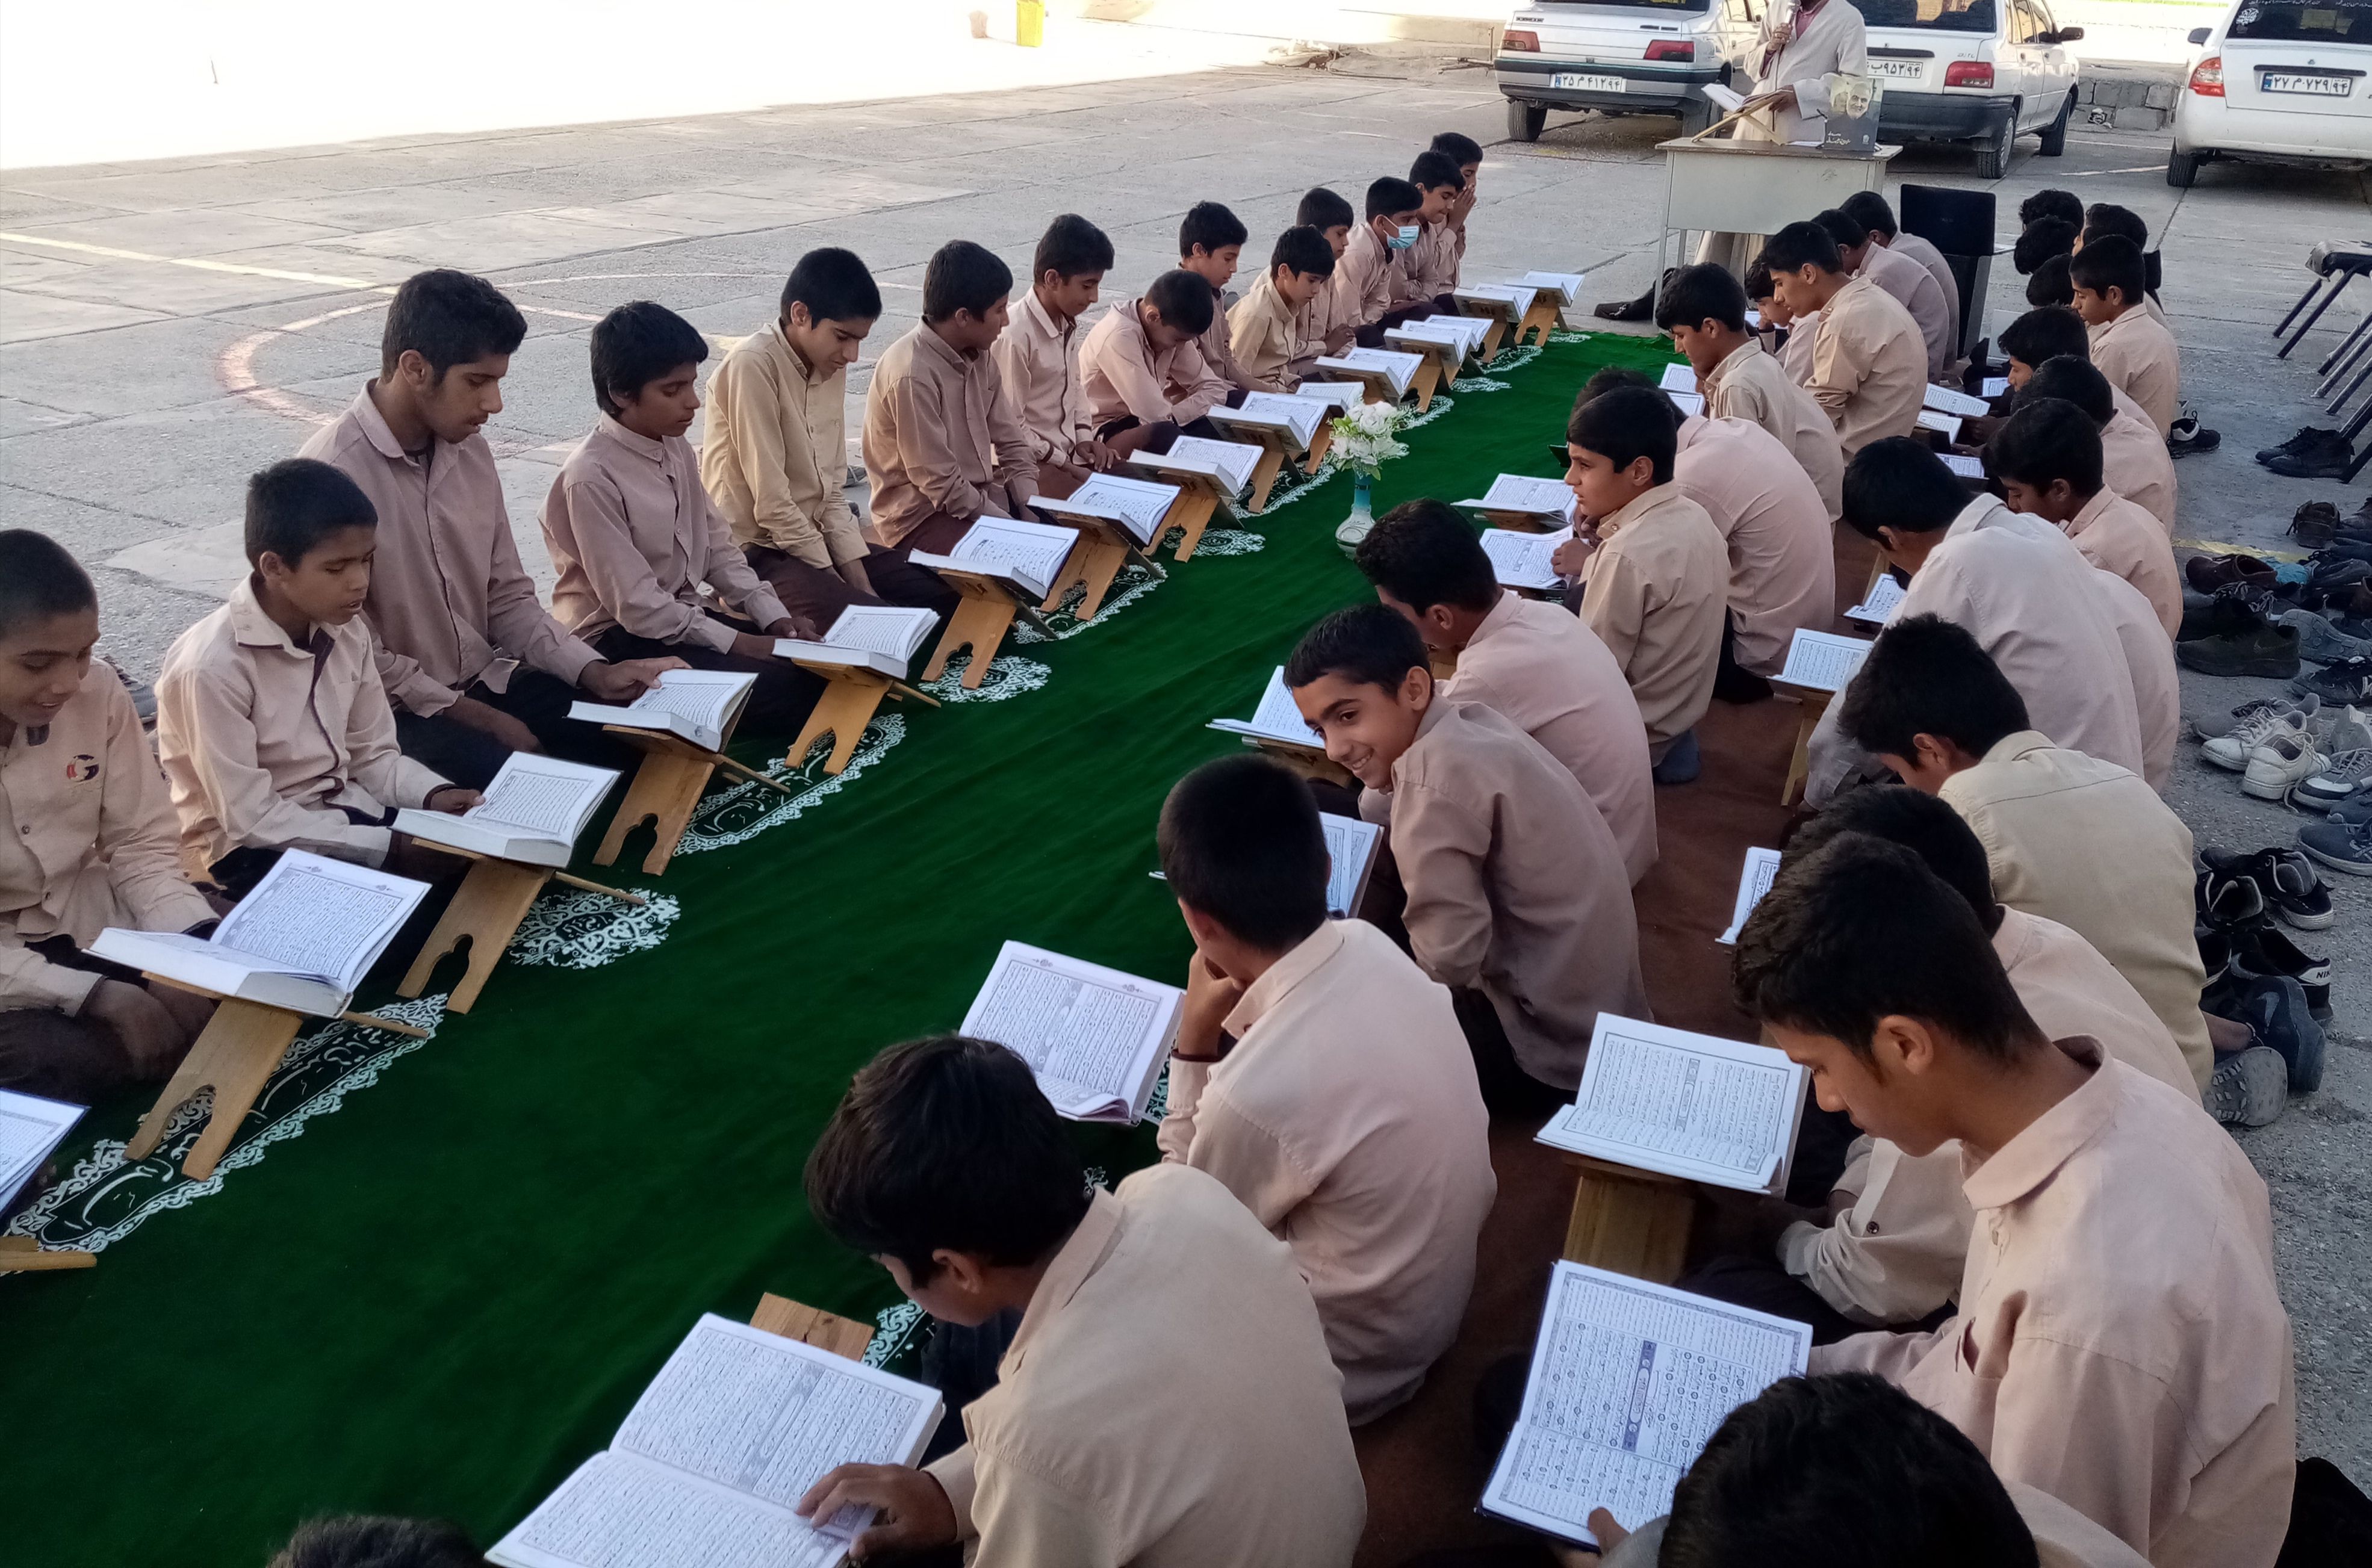 برگزاری محفل انس با قرآن به یاد شهدای کرمان در روستای درجادون